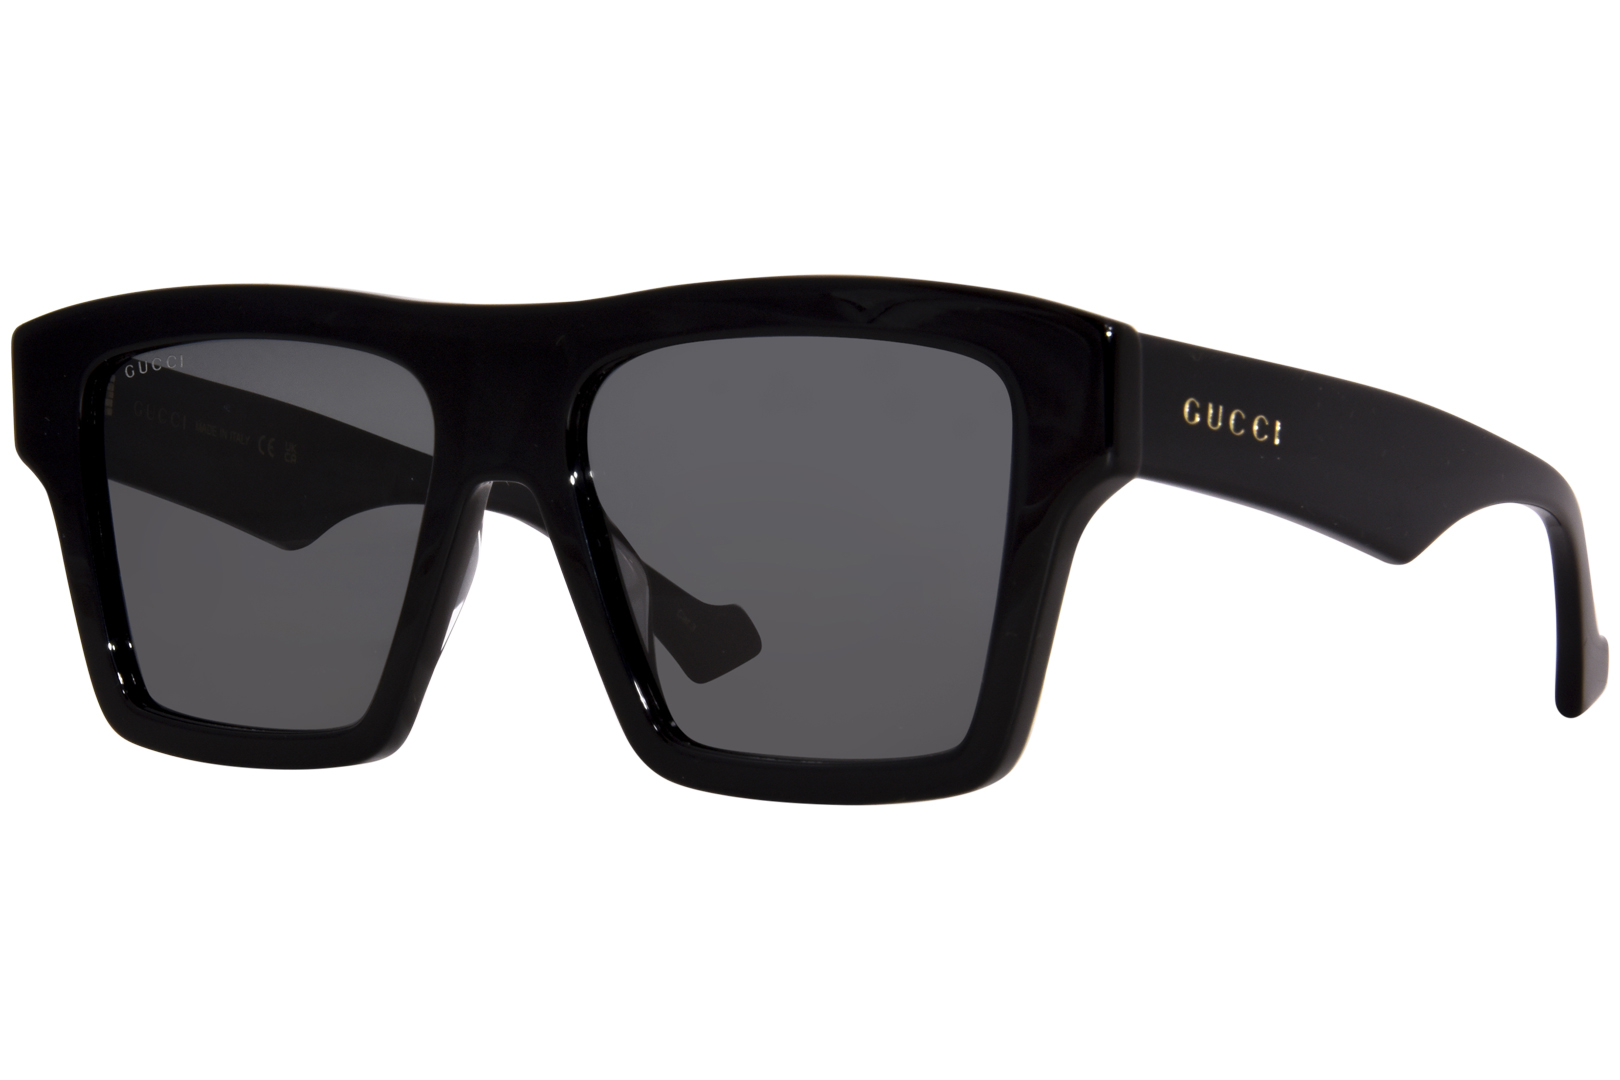 Gucci GG0962S 005 Sunglasses Men's Black/Grey Square Shape 55-17-145 ...